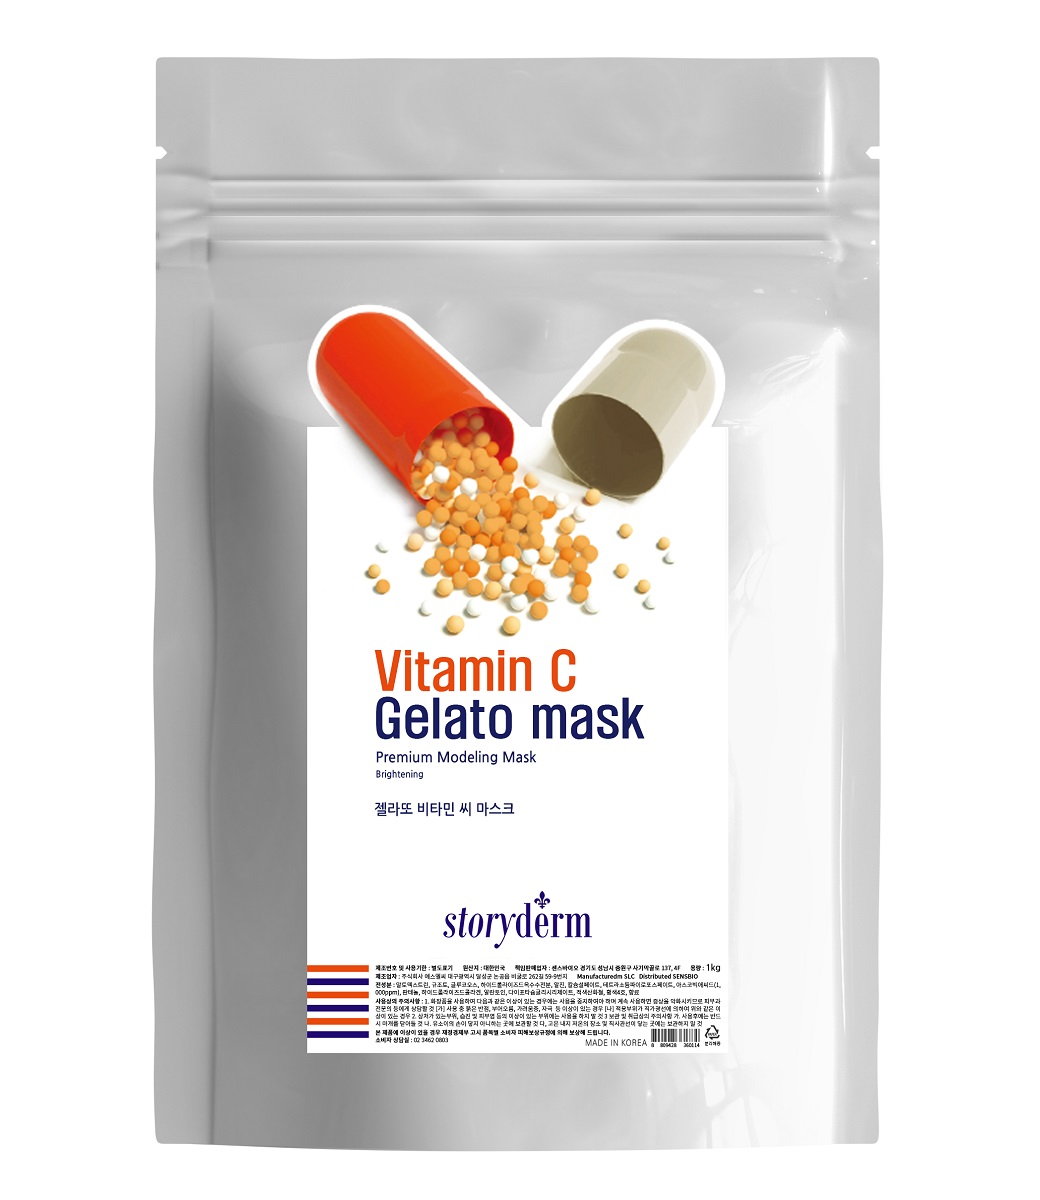 ماسک ژلاتو ویتامین سی استوری درم | روشن کننده، ضد لک، آنتی اکسیدان، ضد پیری | یک کیلوگرم